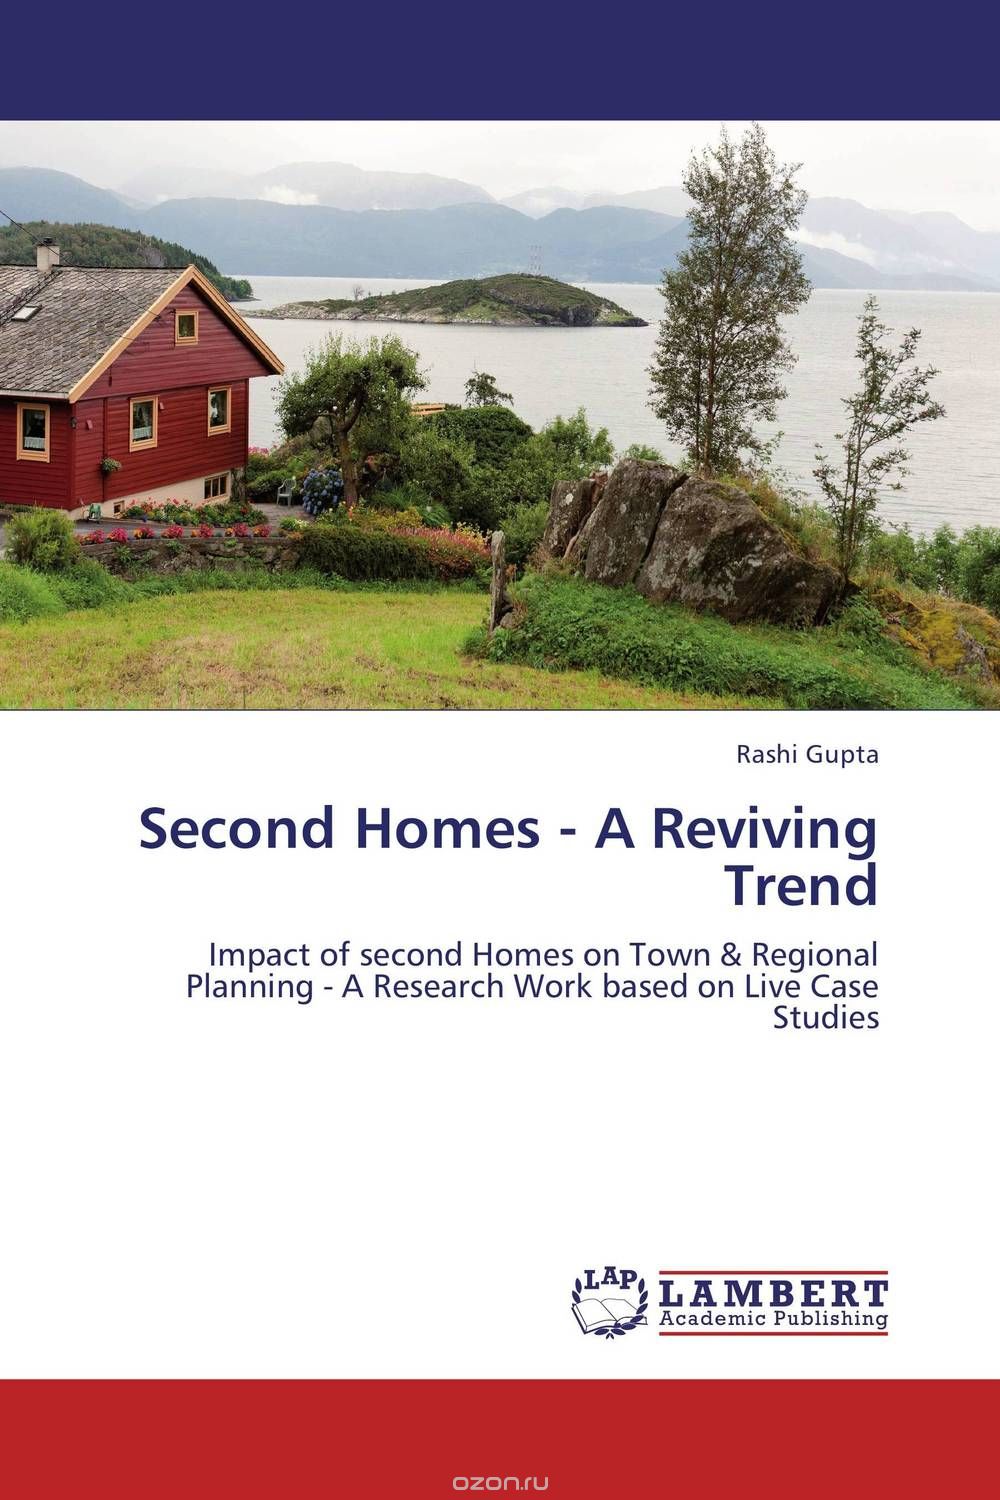 Скачать книгу "Second Homes - A Reviving Trend"